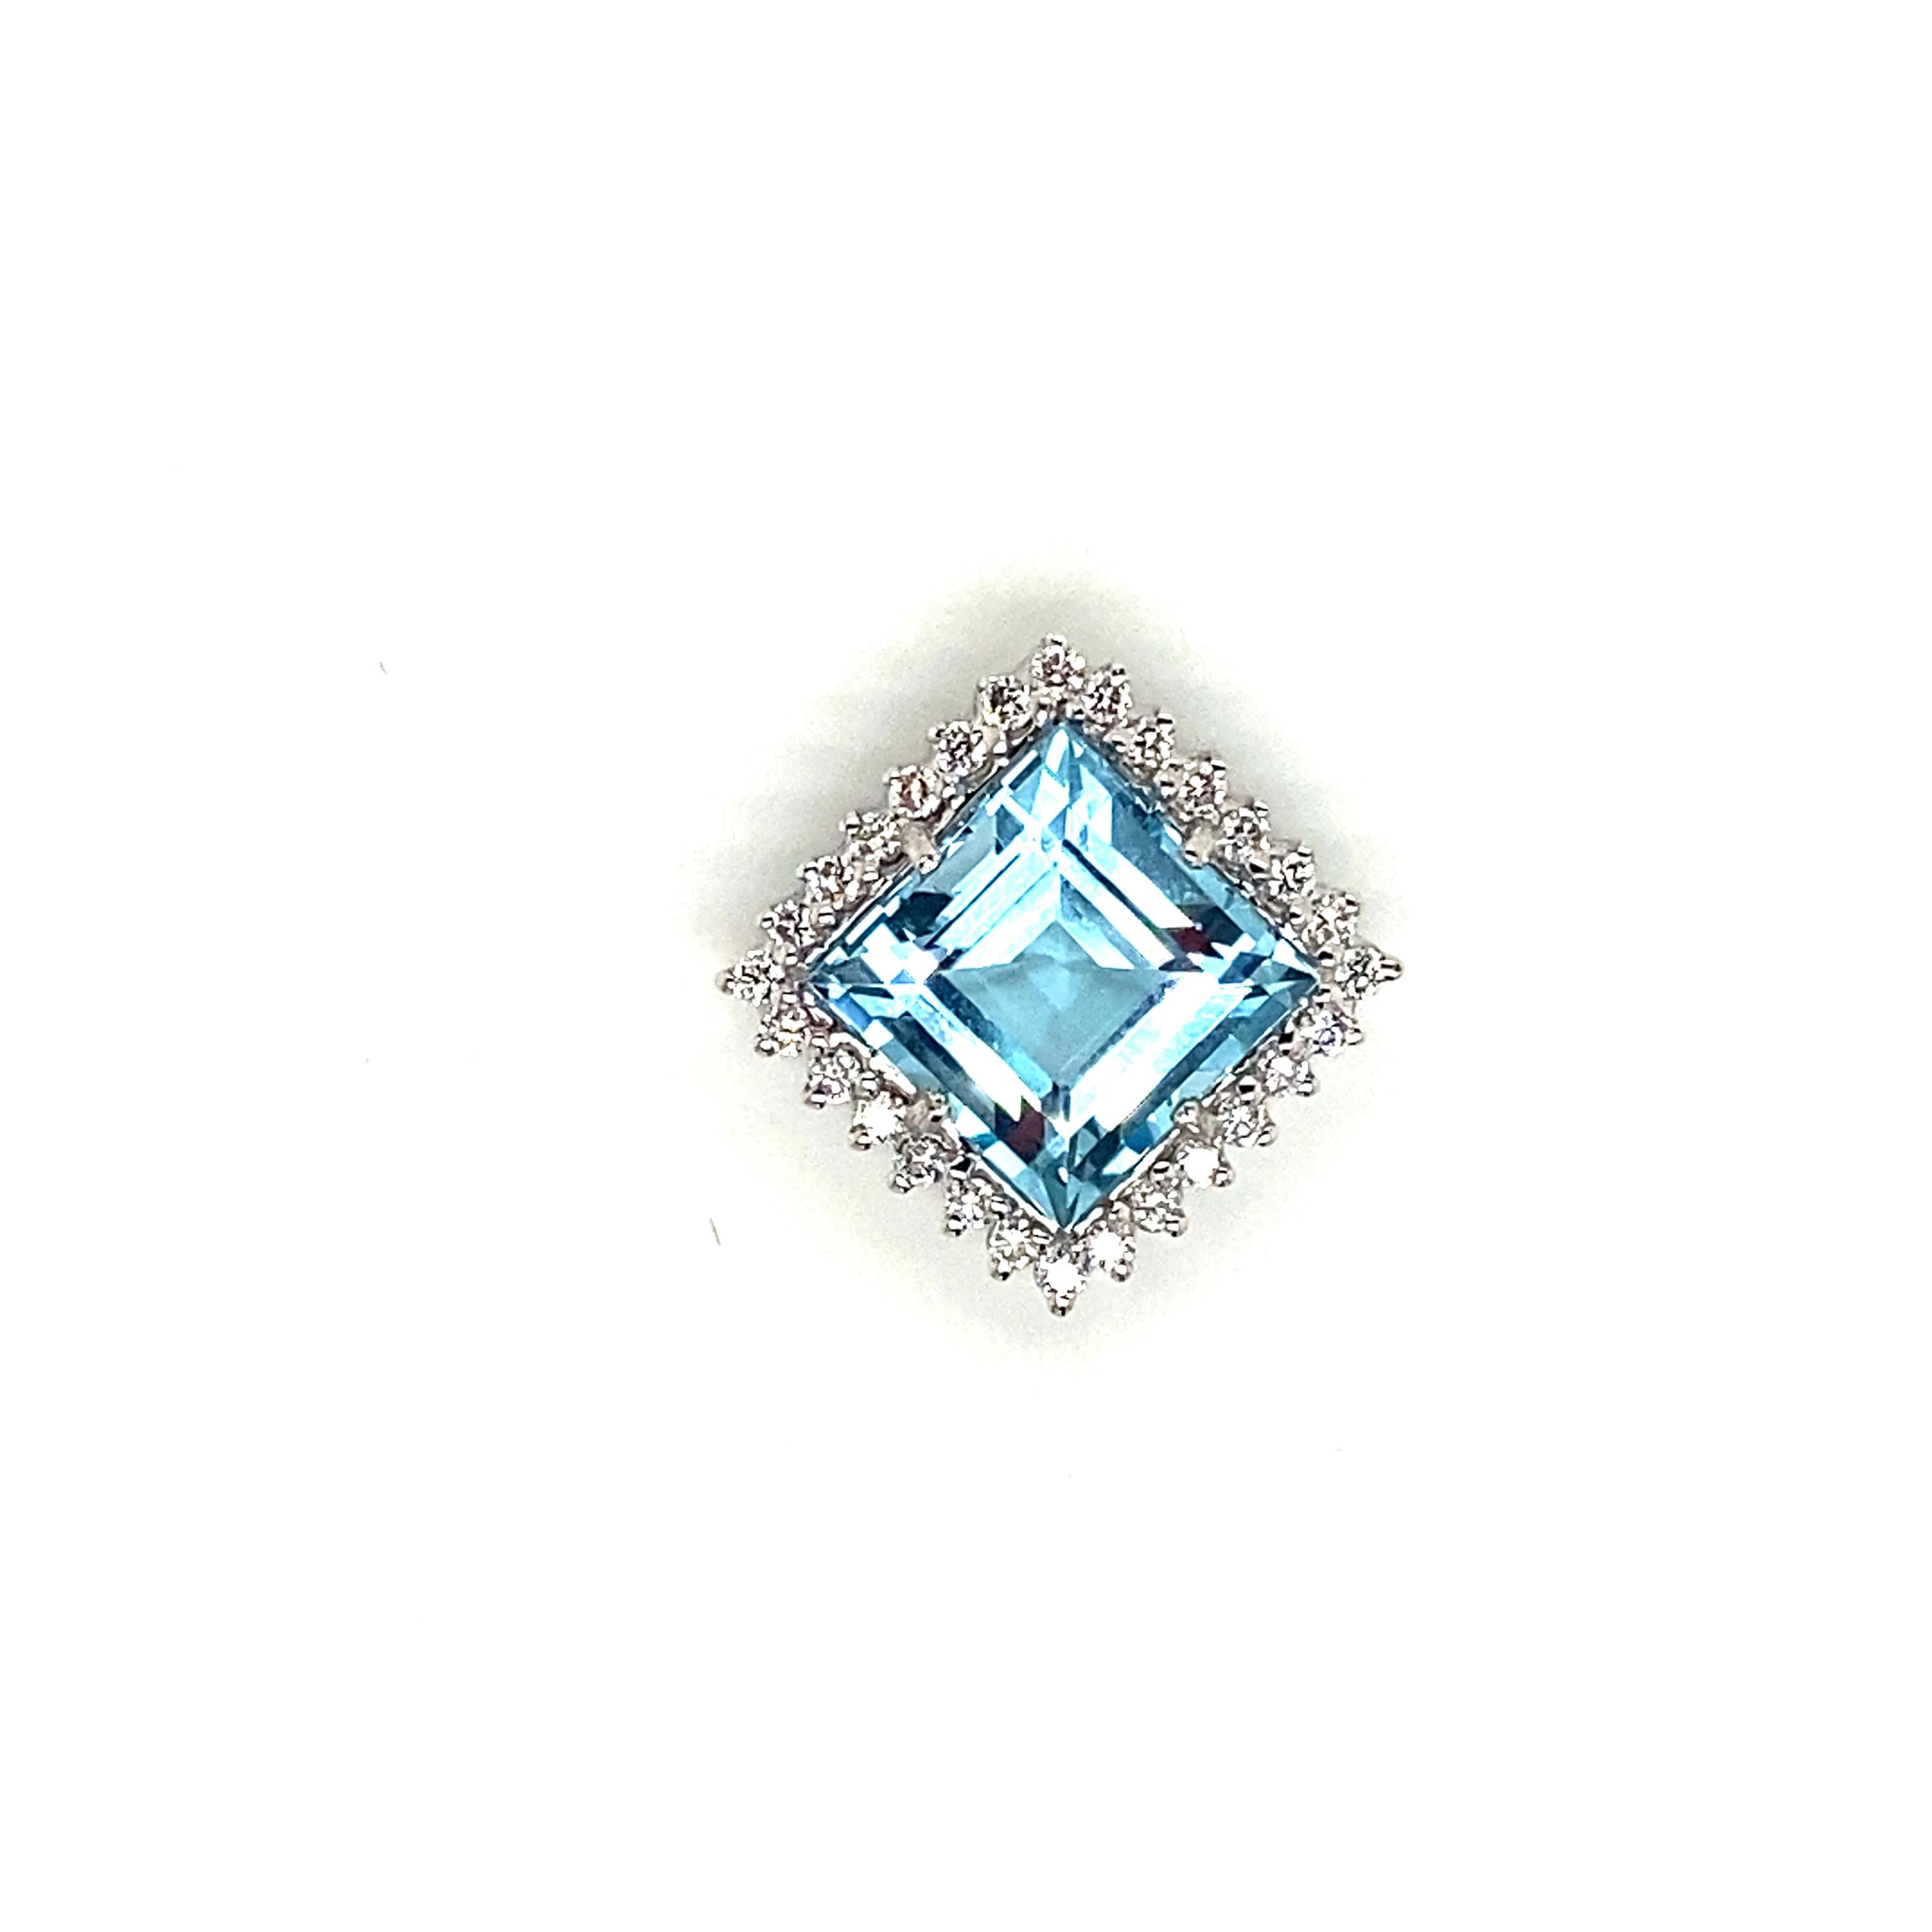 5.goldanhänger mit 74 Karat Blautopas und weißem Diamant:

Der hübsche Anhänger zeigt einen wunderschönen blauen Topas im Asscher-Schliff mit einem Gewicht von 5,74 Karat, umgeben von einem Kranz weißer runder Brillanten mit einem Gewicht von 0,34